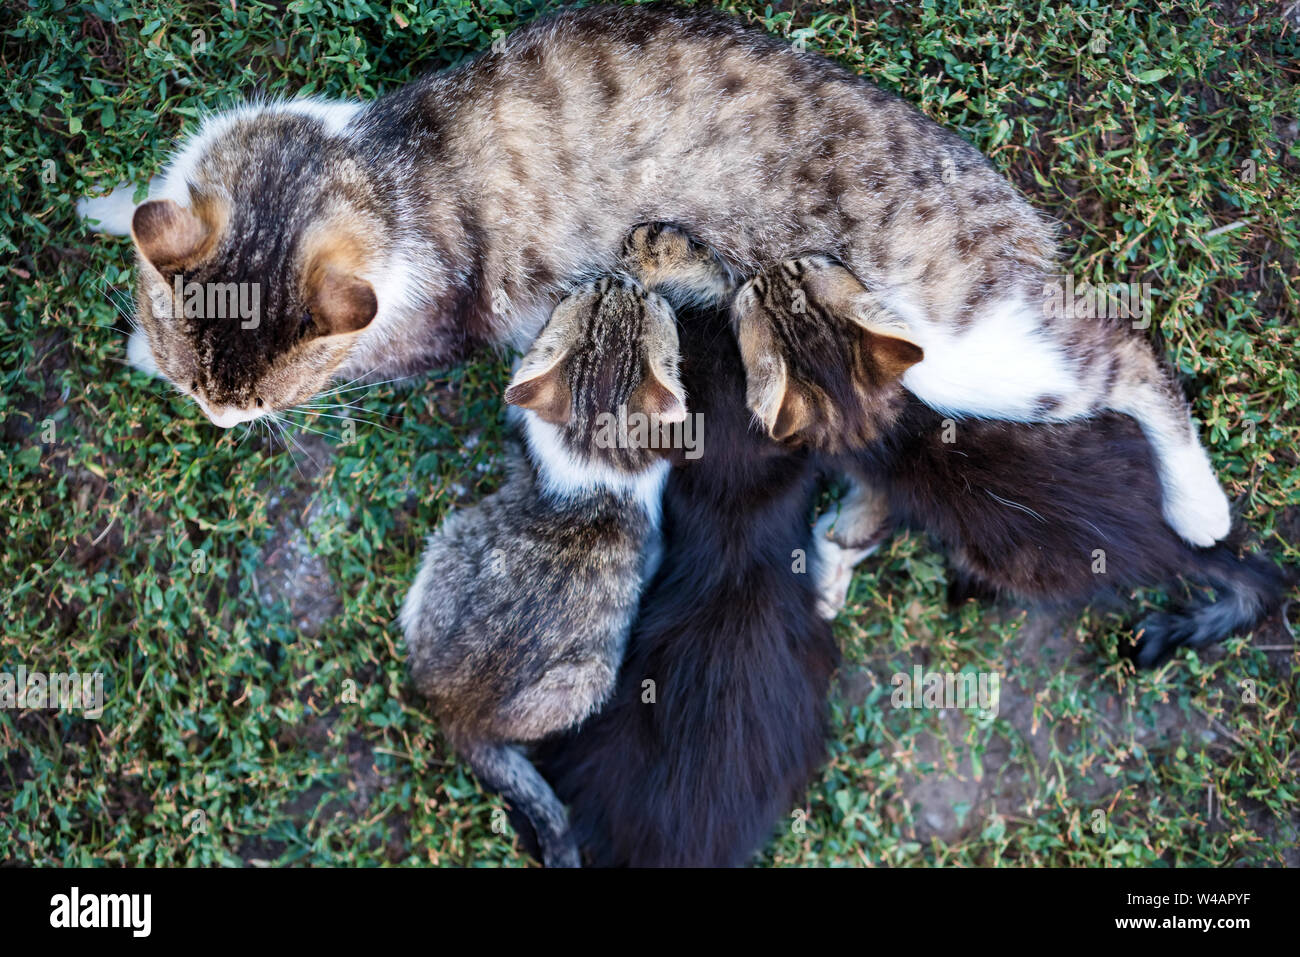 Mother cat feeding her kitten children outdoors Stock Photo